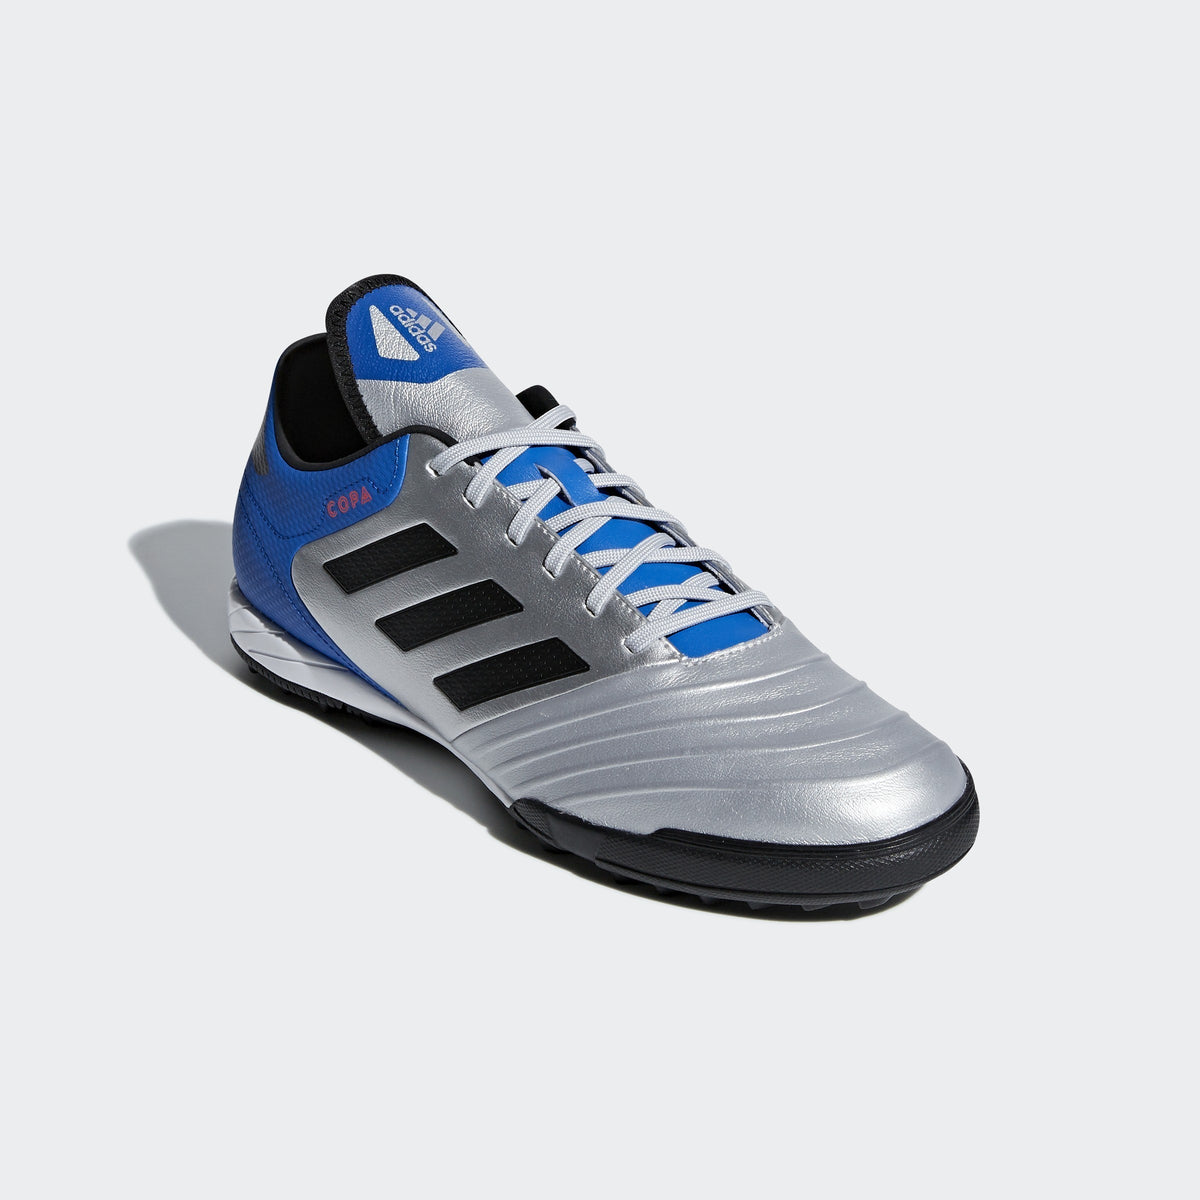 creer Montaña Kilauea cómodo Men's Copa Tango 18.3 TF Soccer Shoes - Silver/Black/Blue